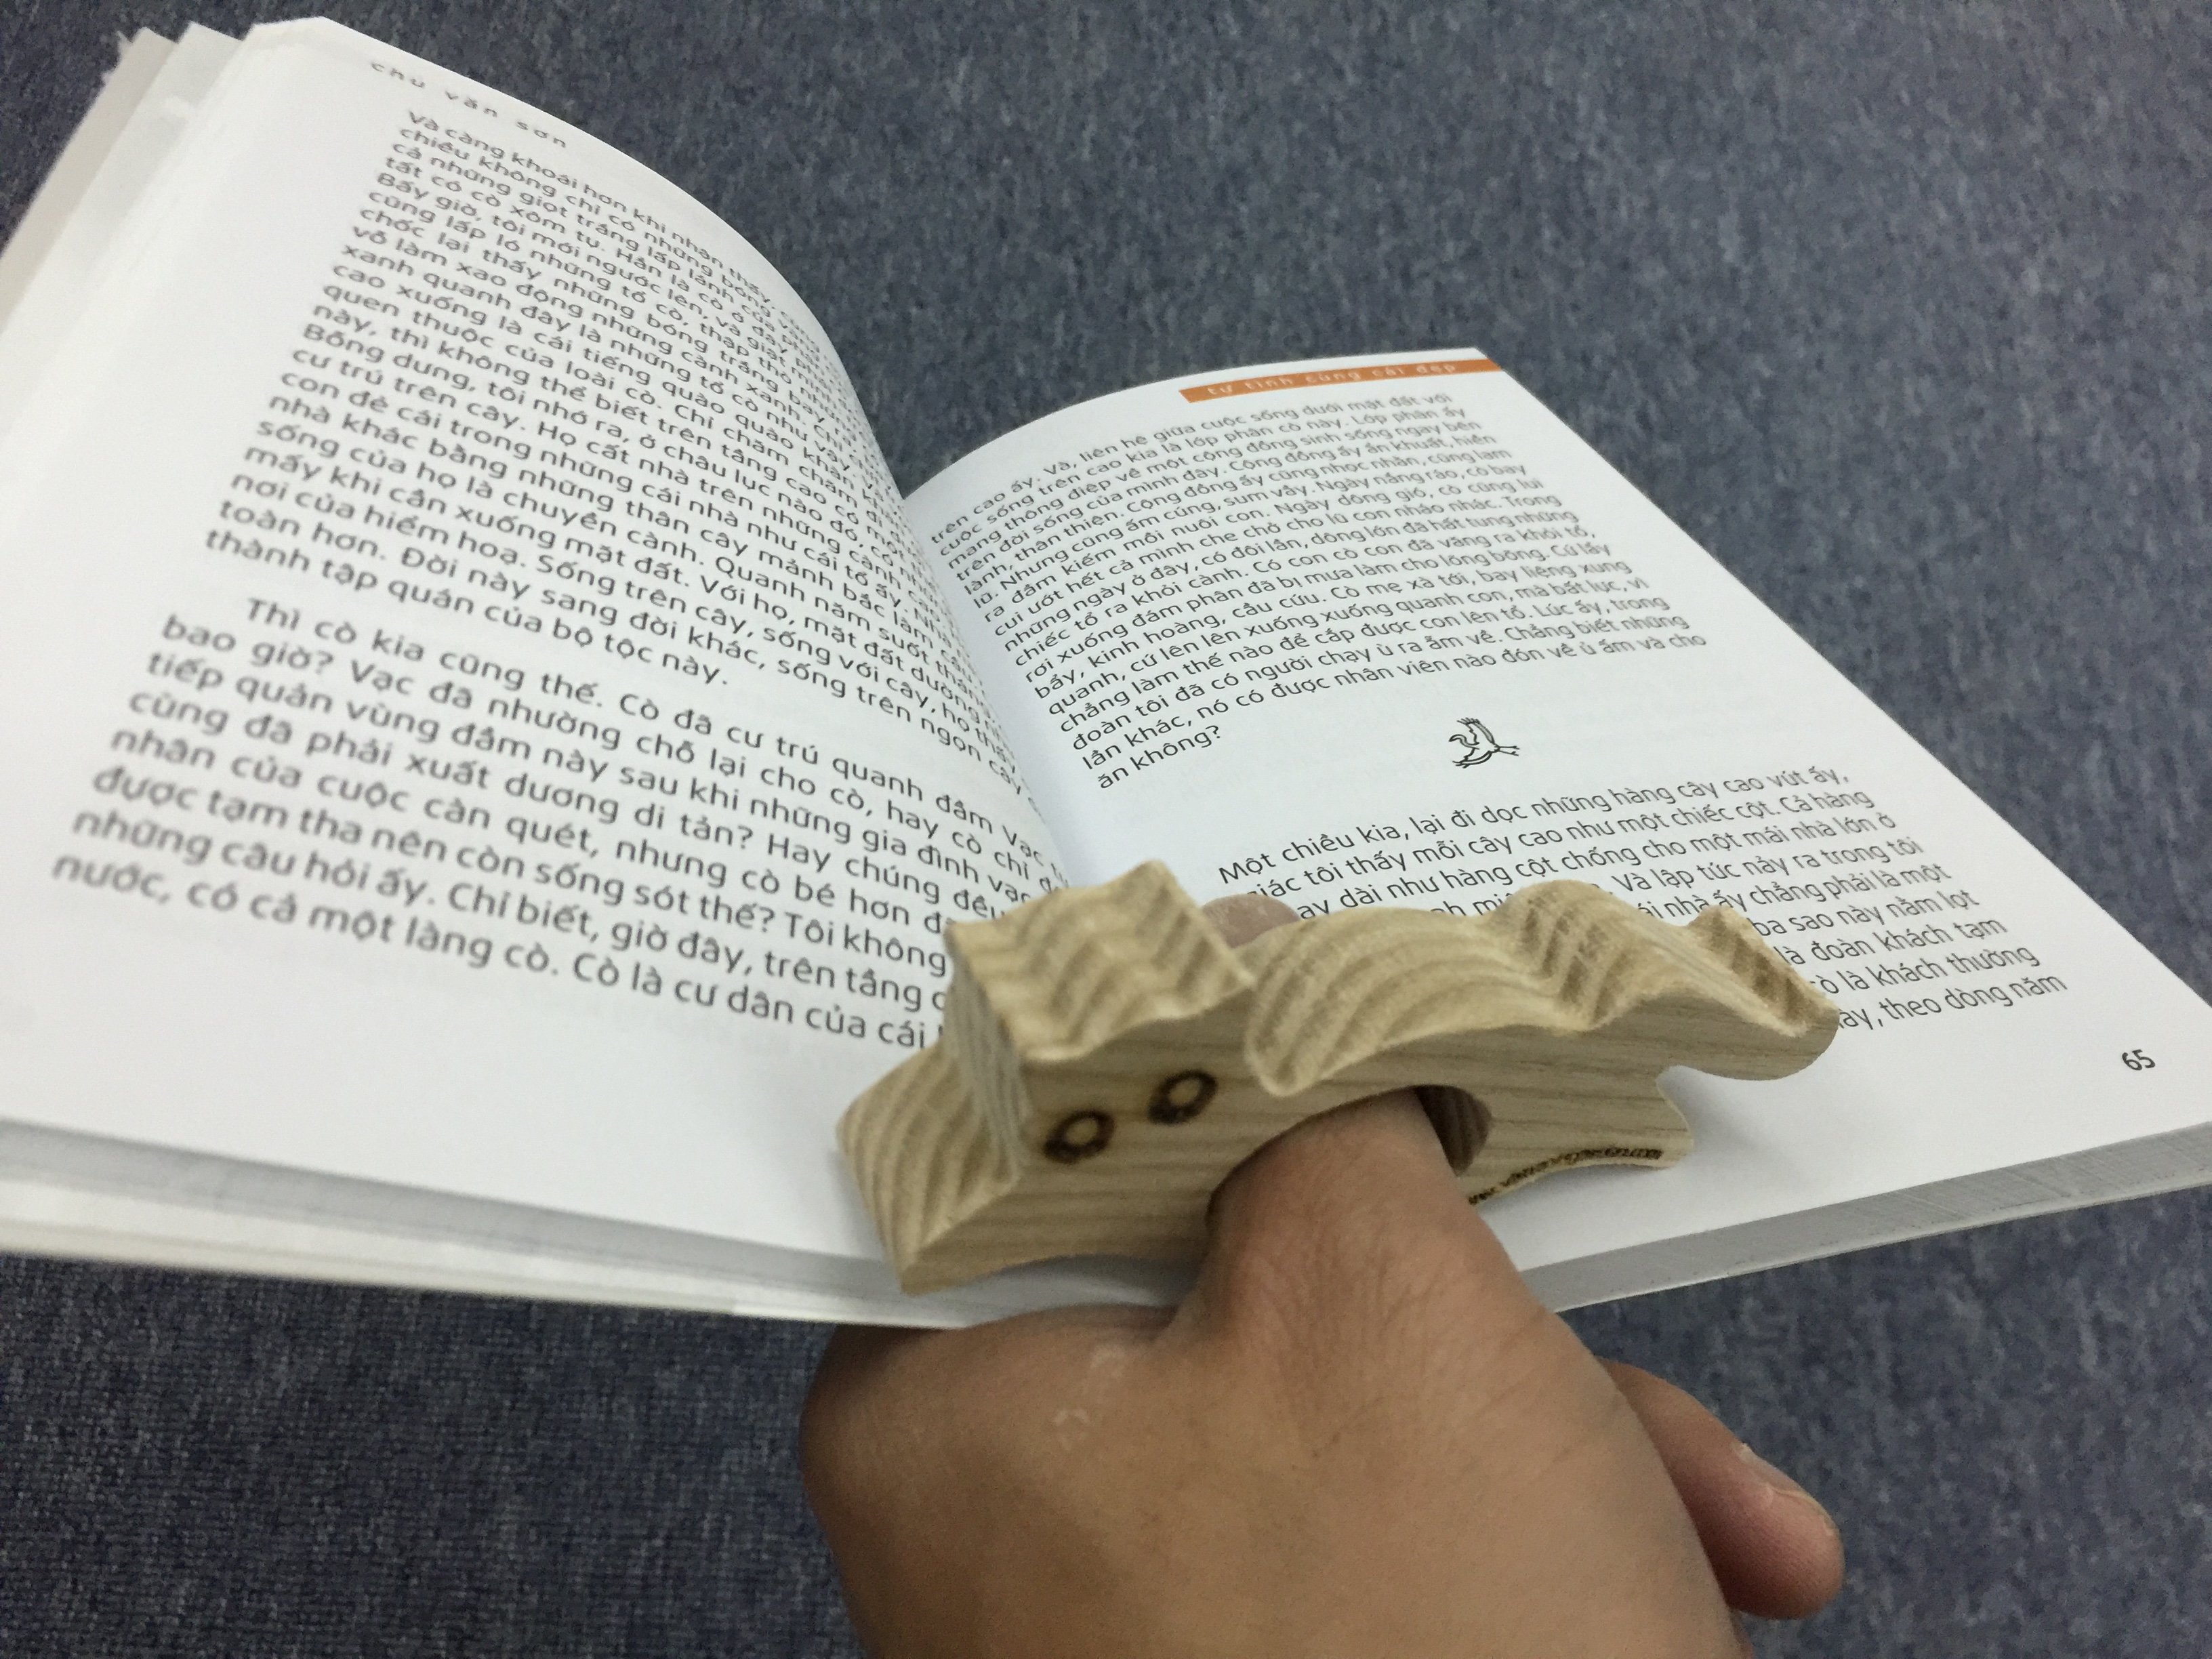 Kẹp sách xỏ ngón gỗ tự nhiên COMBO A (5 chiếc) - hình cá voi, mèo, ếch, hình la bàn (thumb book holder - whale, cat, frog and compass shape)